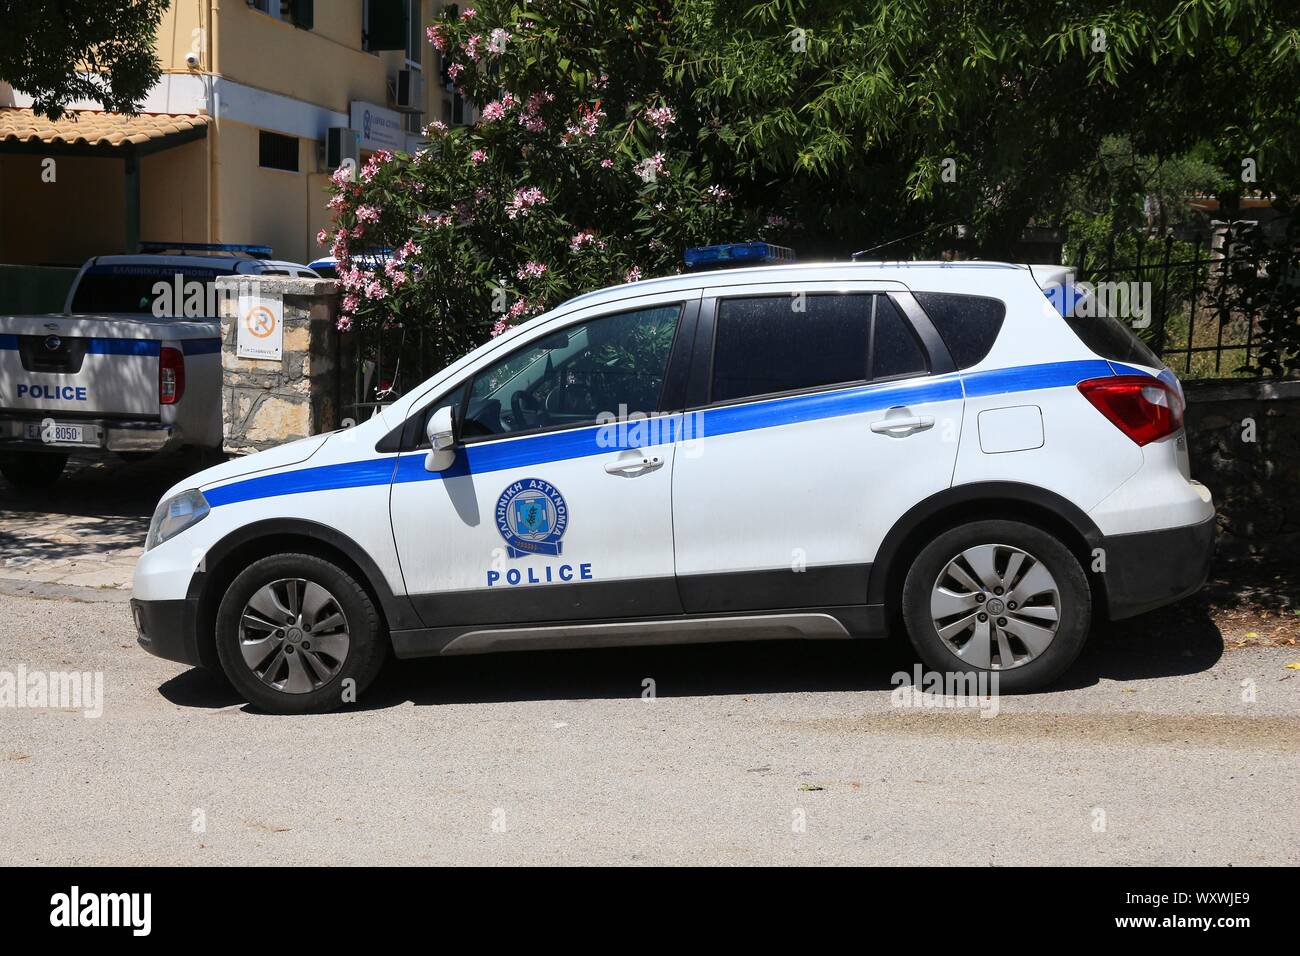 Corfou, Grèce - juin 2, 2016 : Suzuki SX4 crossover voiture de police garée dans l'île de Corfou, Grèce. Avec 566 véhicules immatriculés en Grèce par 1000 habitants Banque D'Images